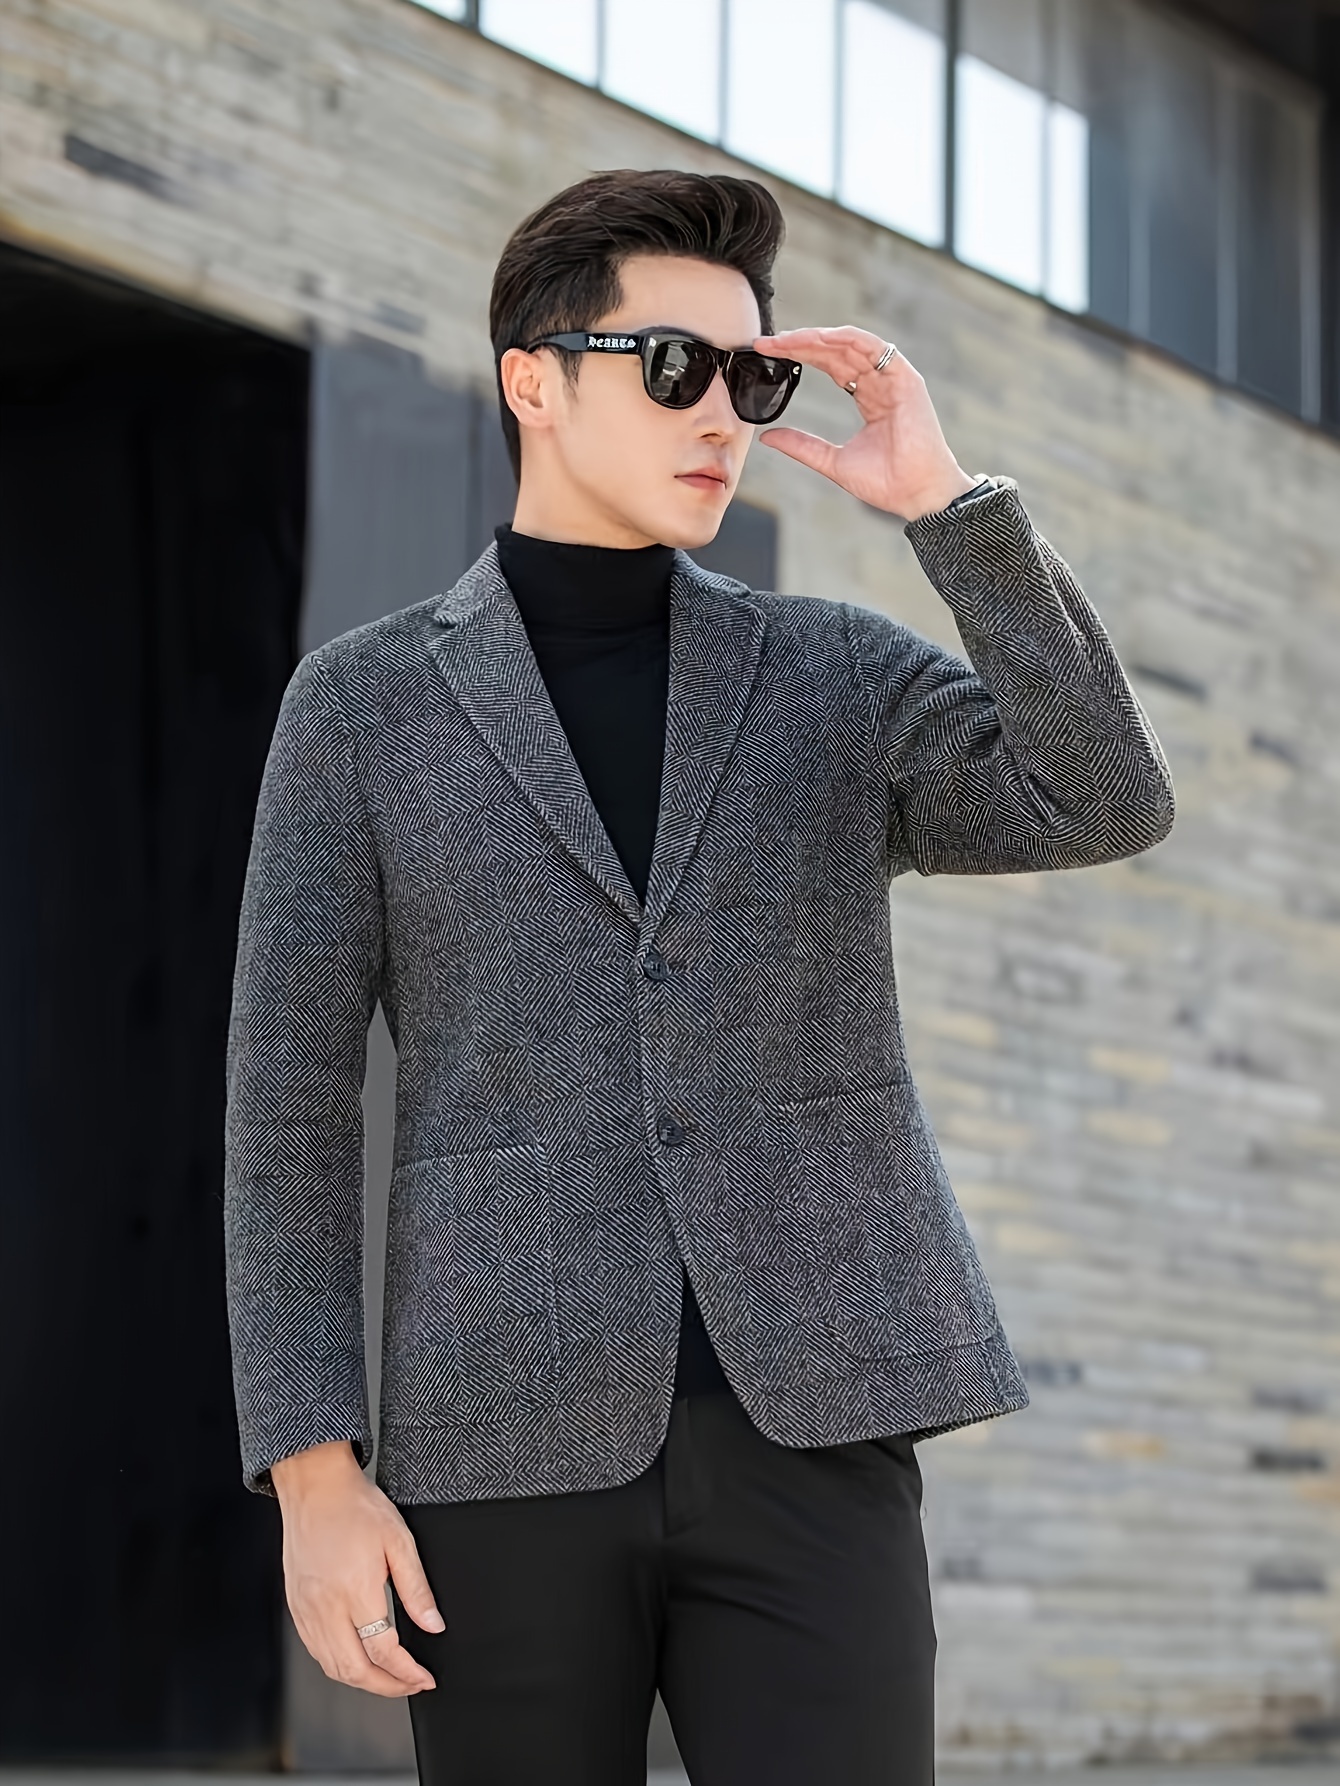 Fashion Men's Suit Jacket Man Business Casual Men One, 52% OFF